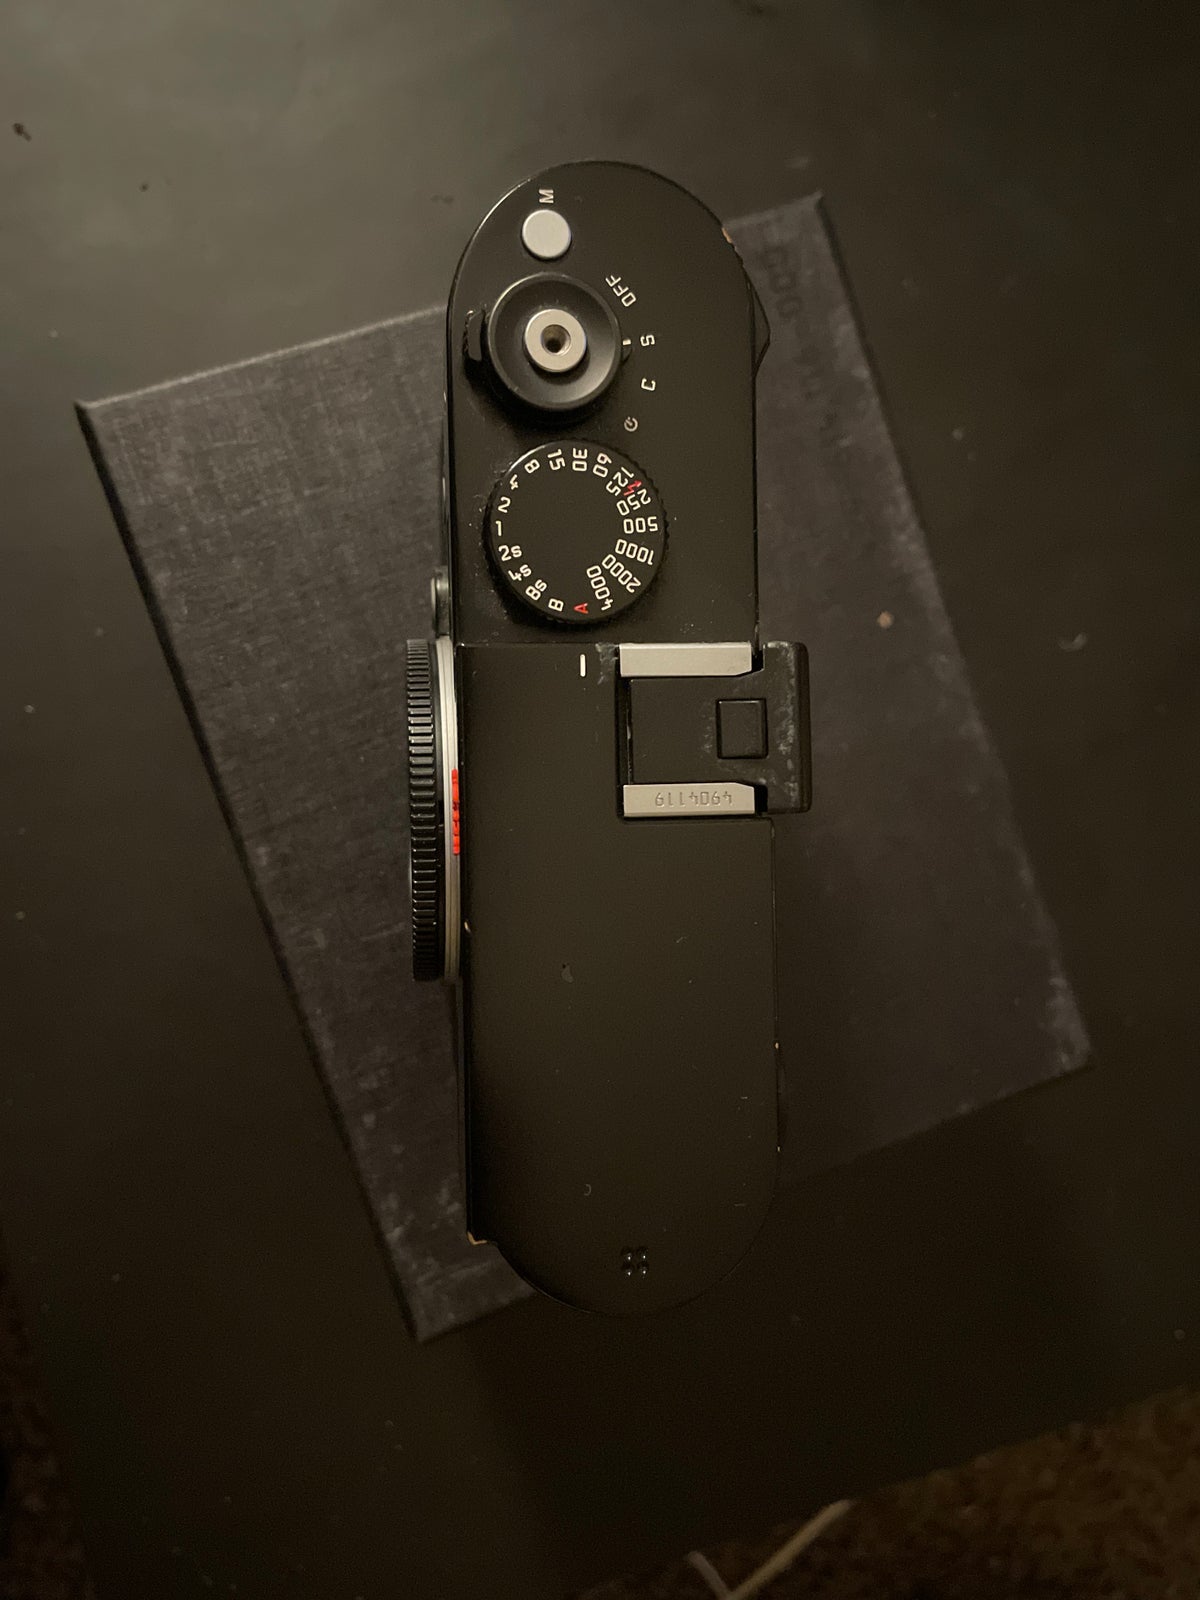 Leica, M ( 240 ), 24 megapixels